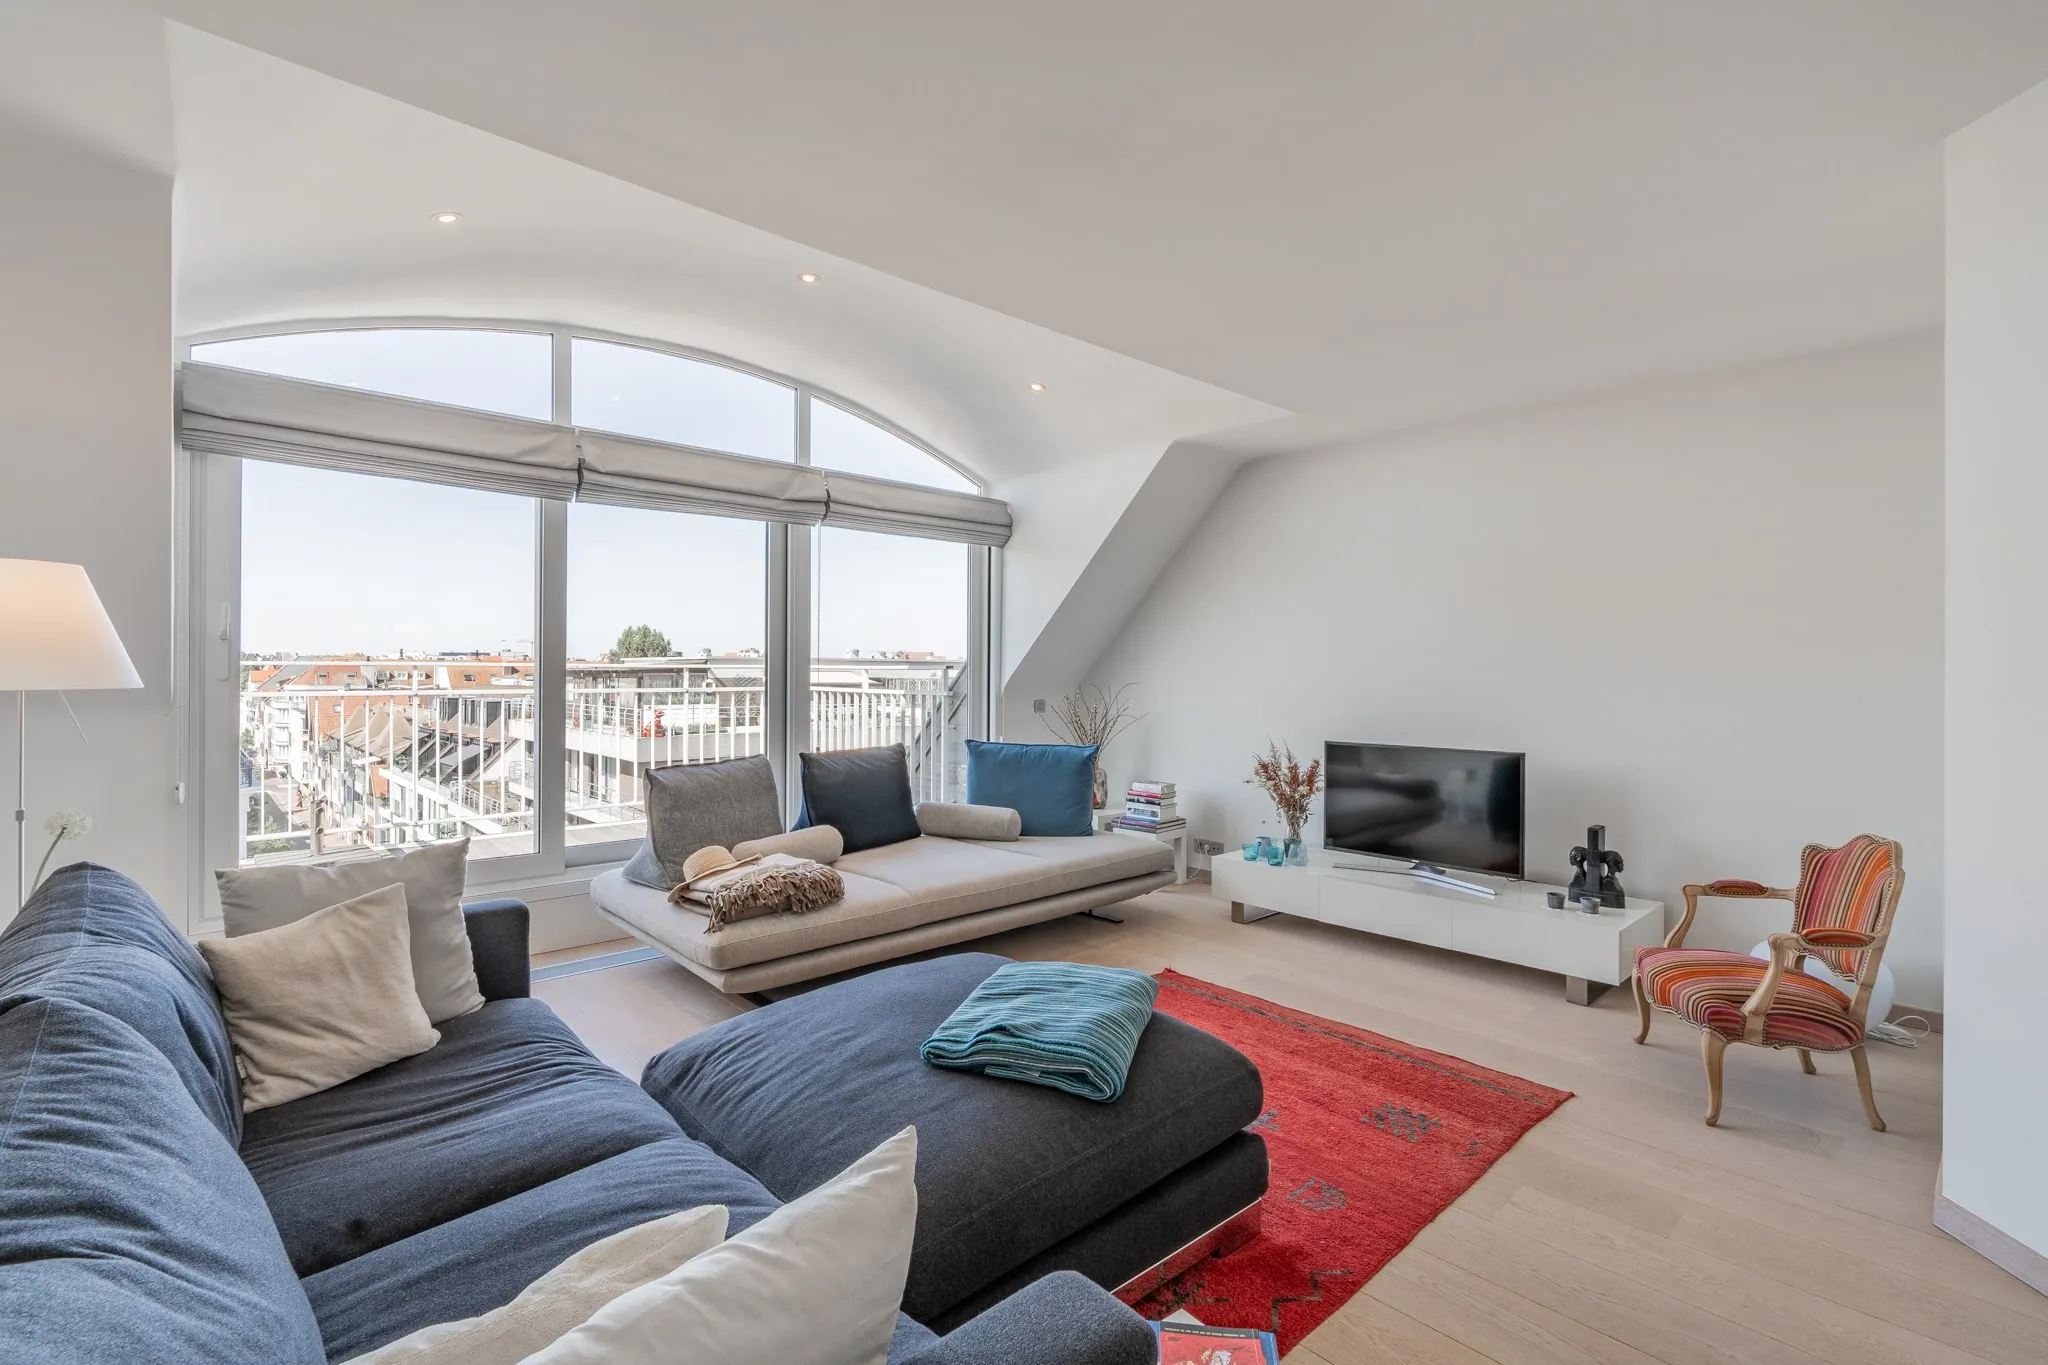 Magnifique appartement en duplex dans un immeuble récent avec de belles terrasses ensoleillées et des vues dégagées à Knokke.